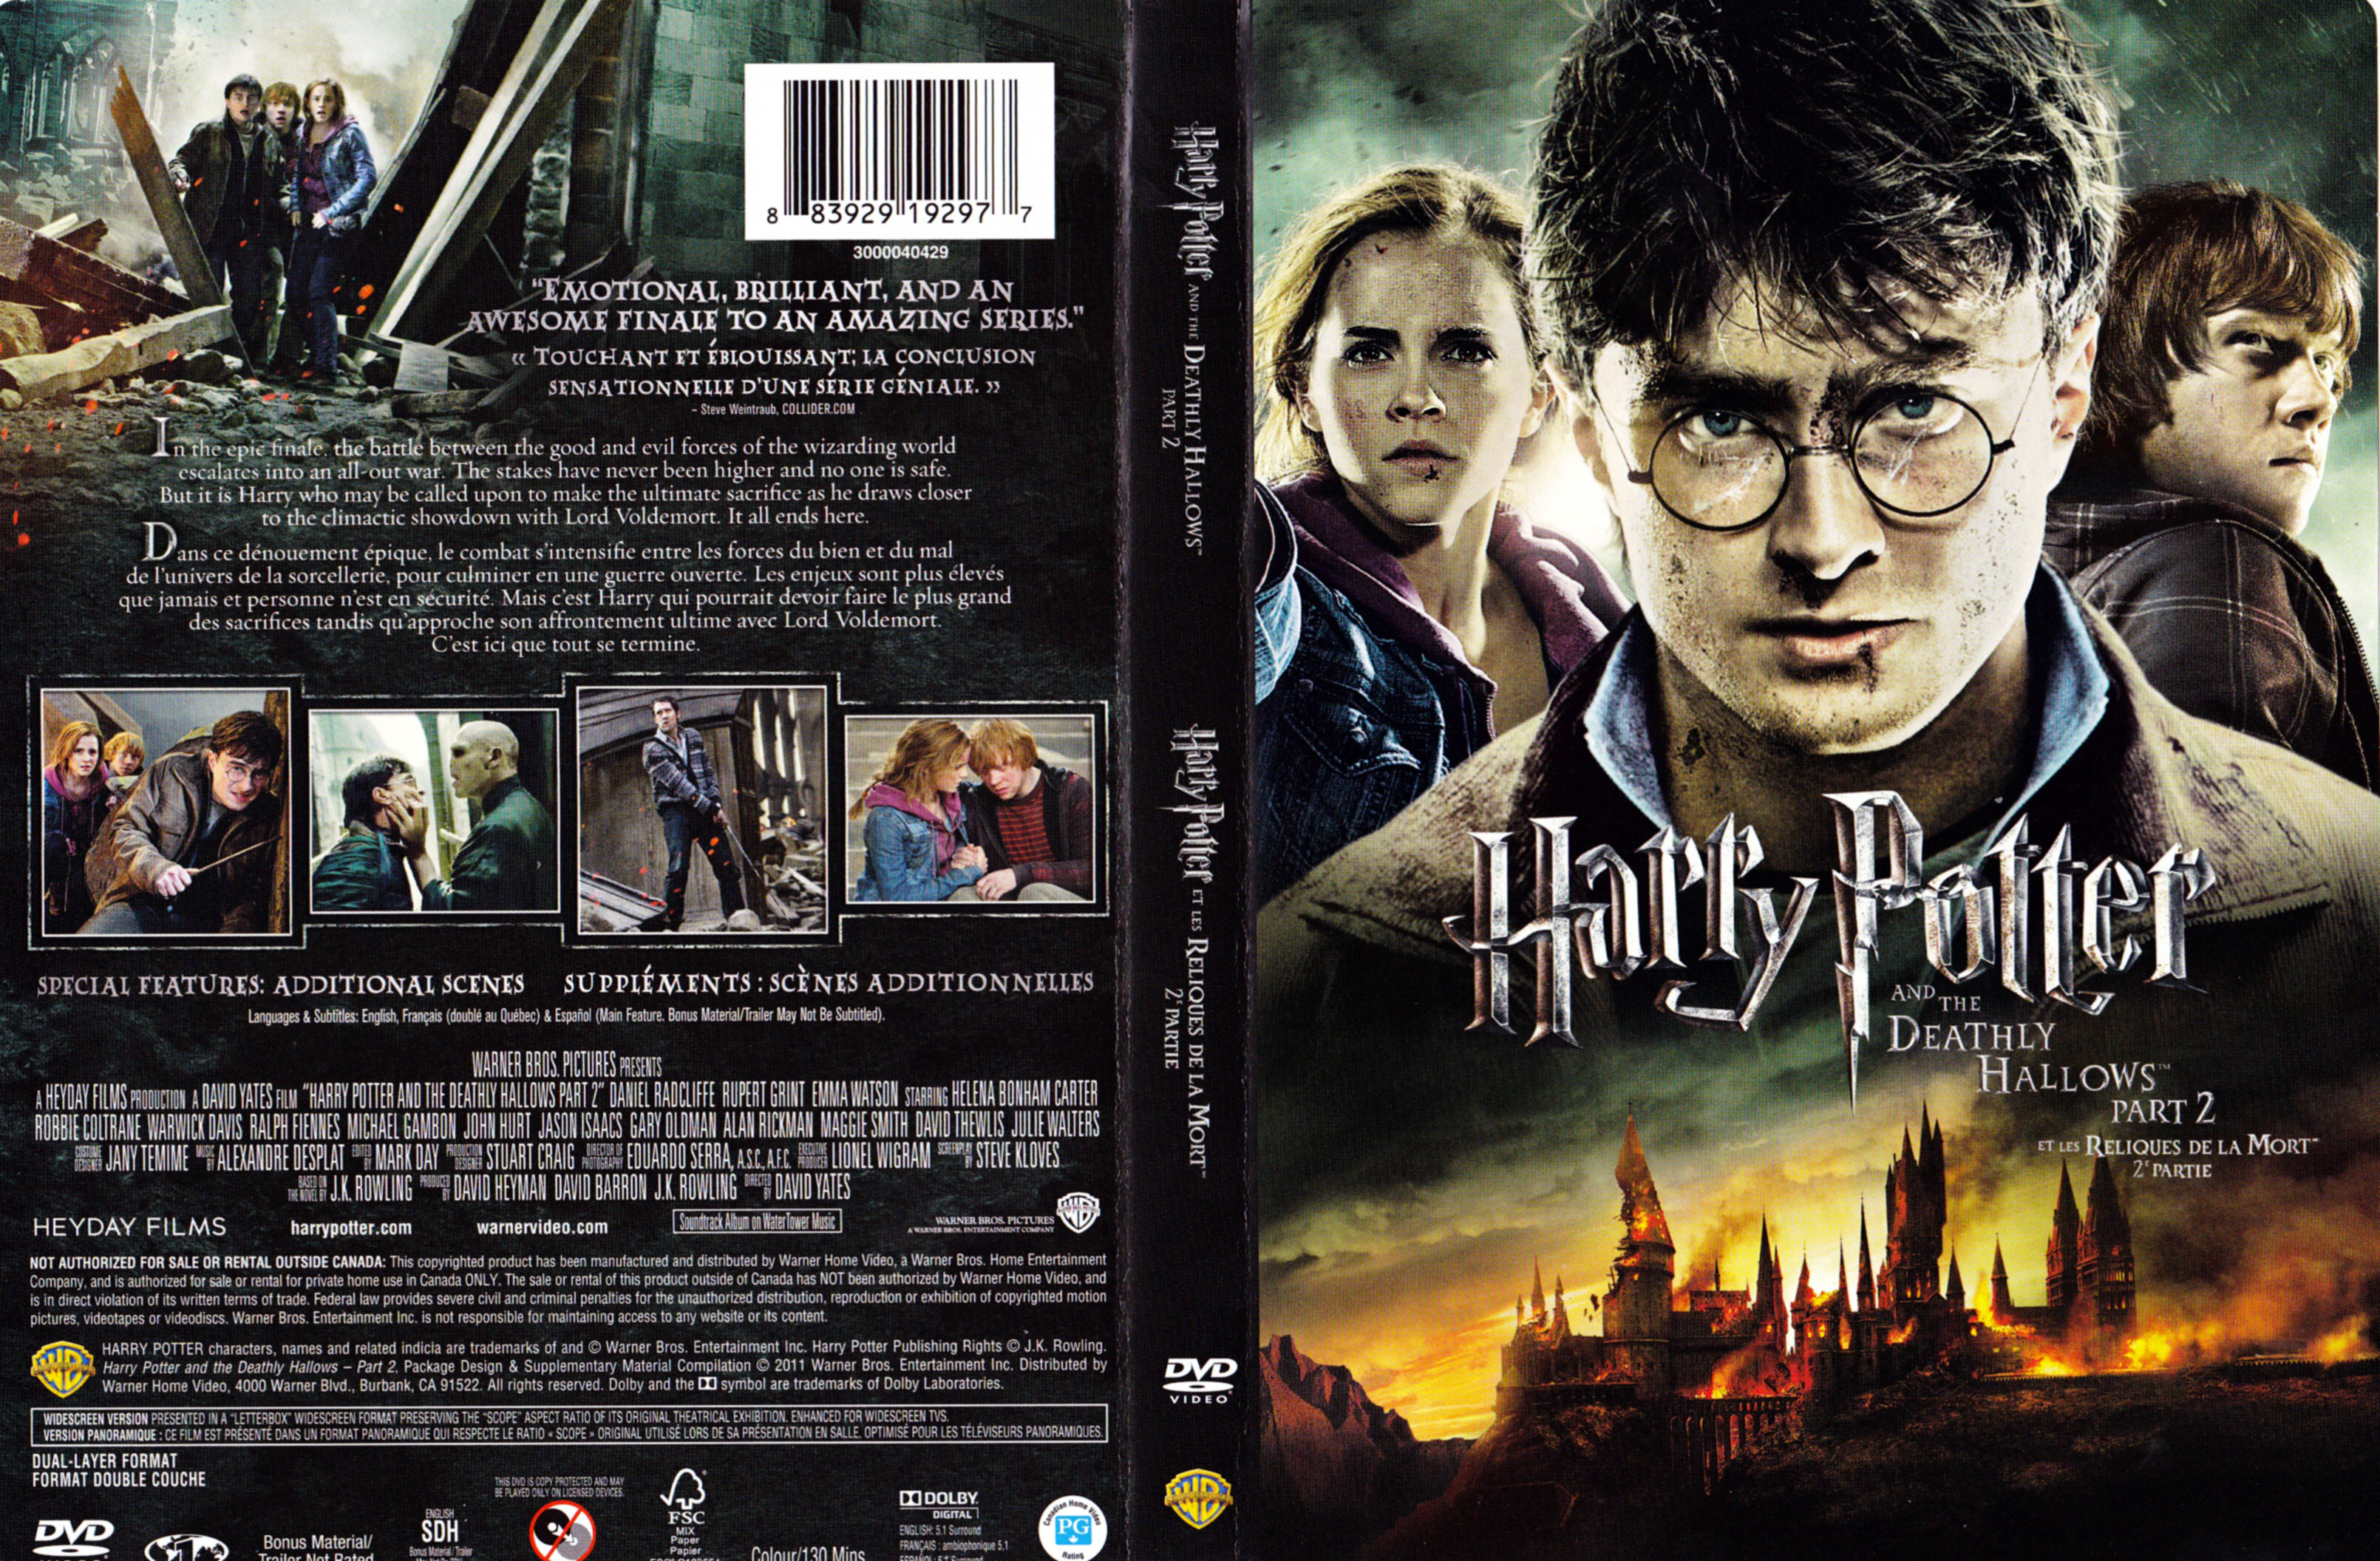 Jaquette DVD Harry Potter et les reliques de la mort - 2me partie (Canadienne)